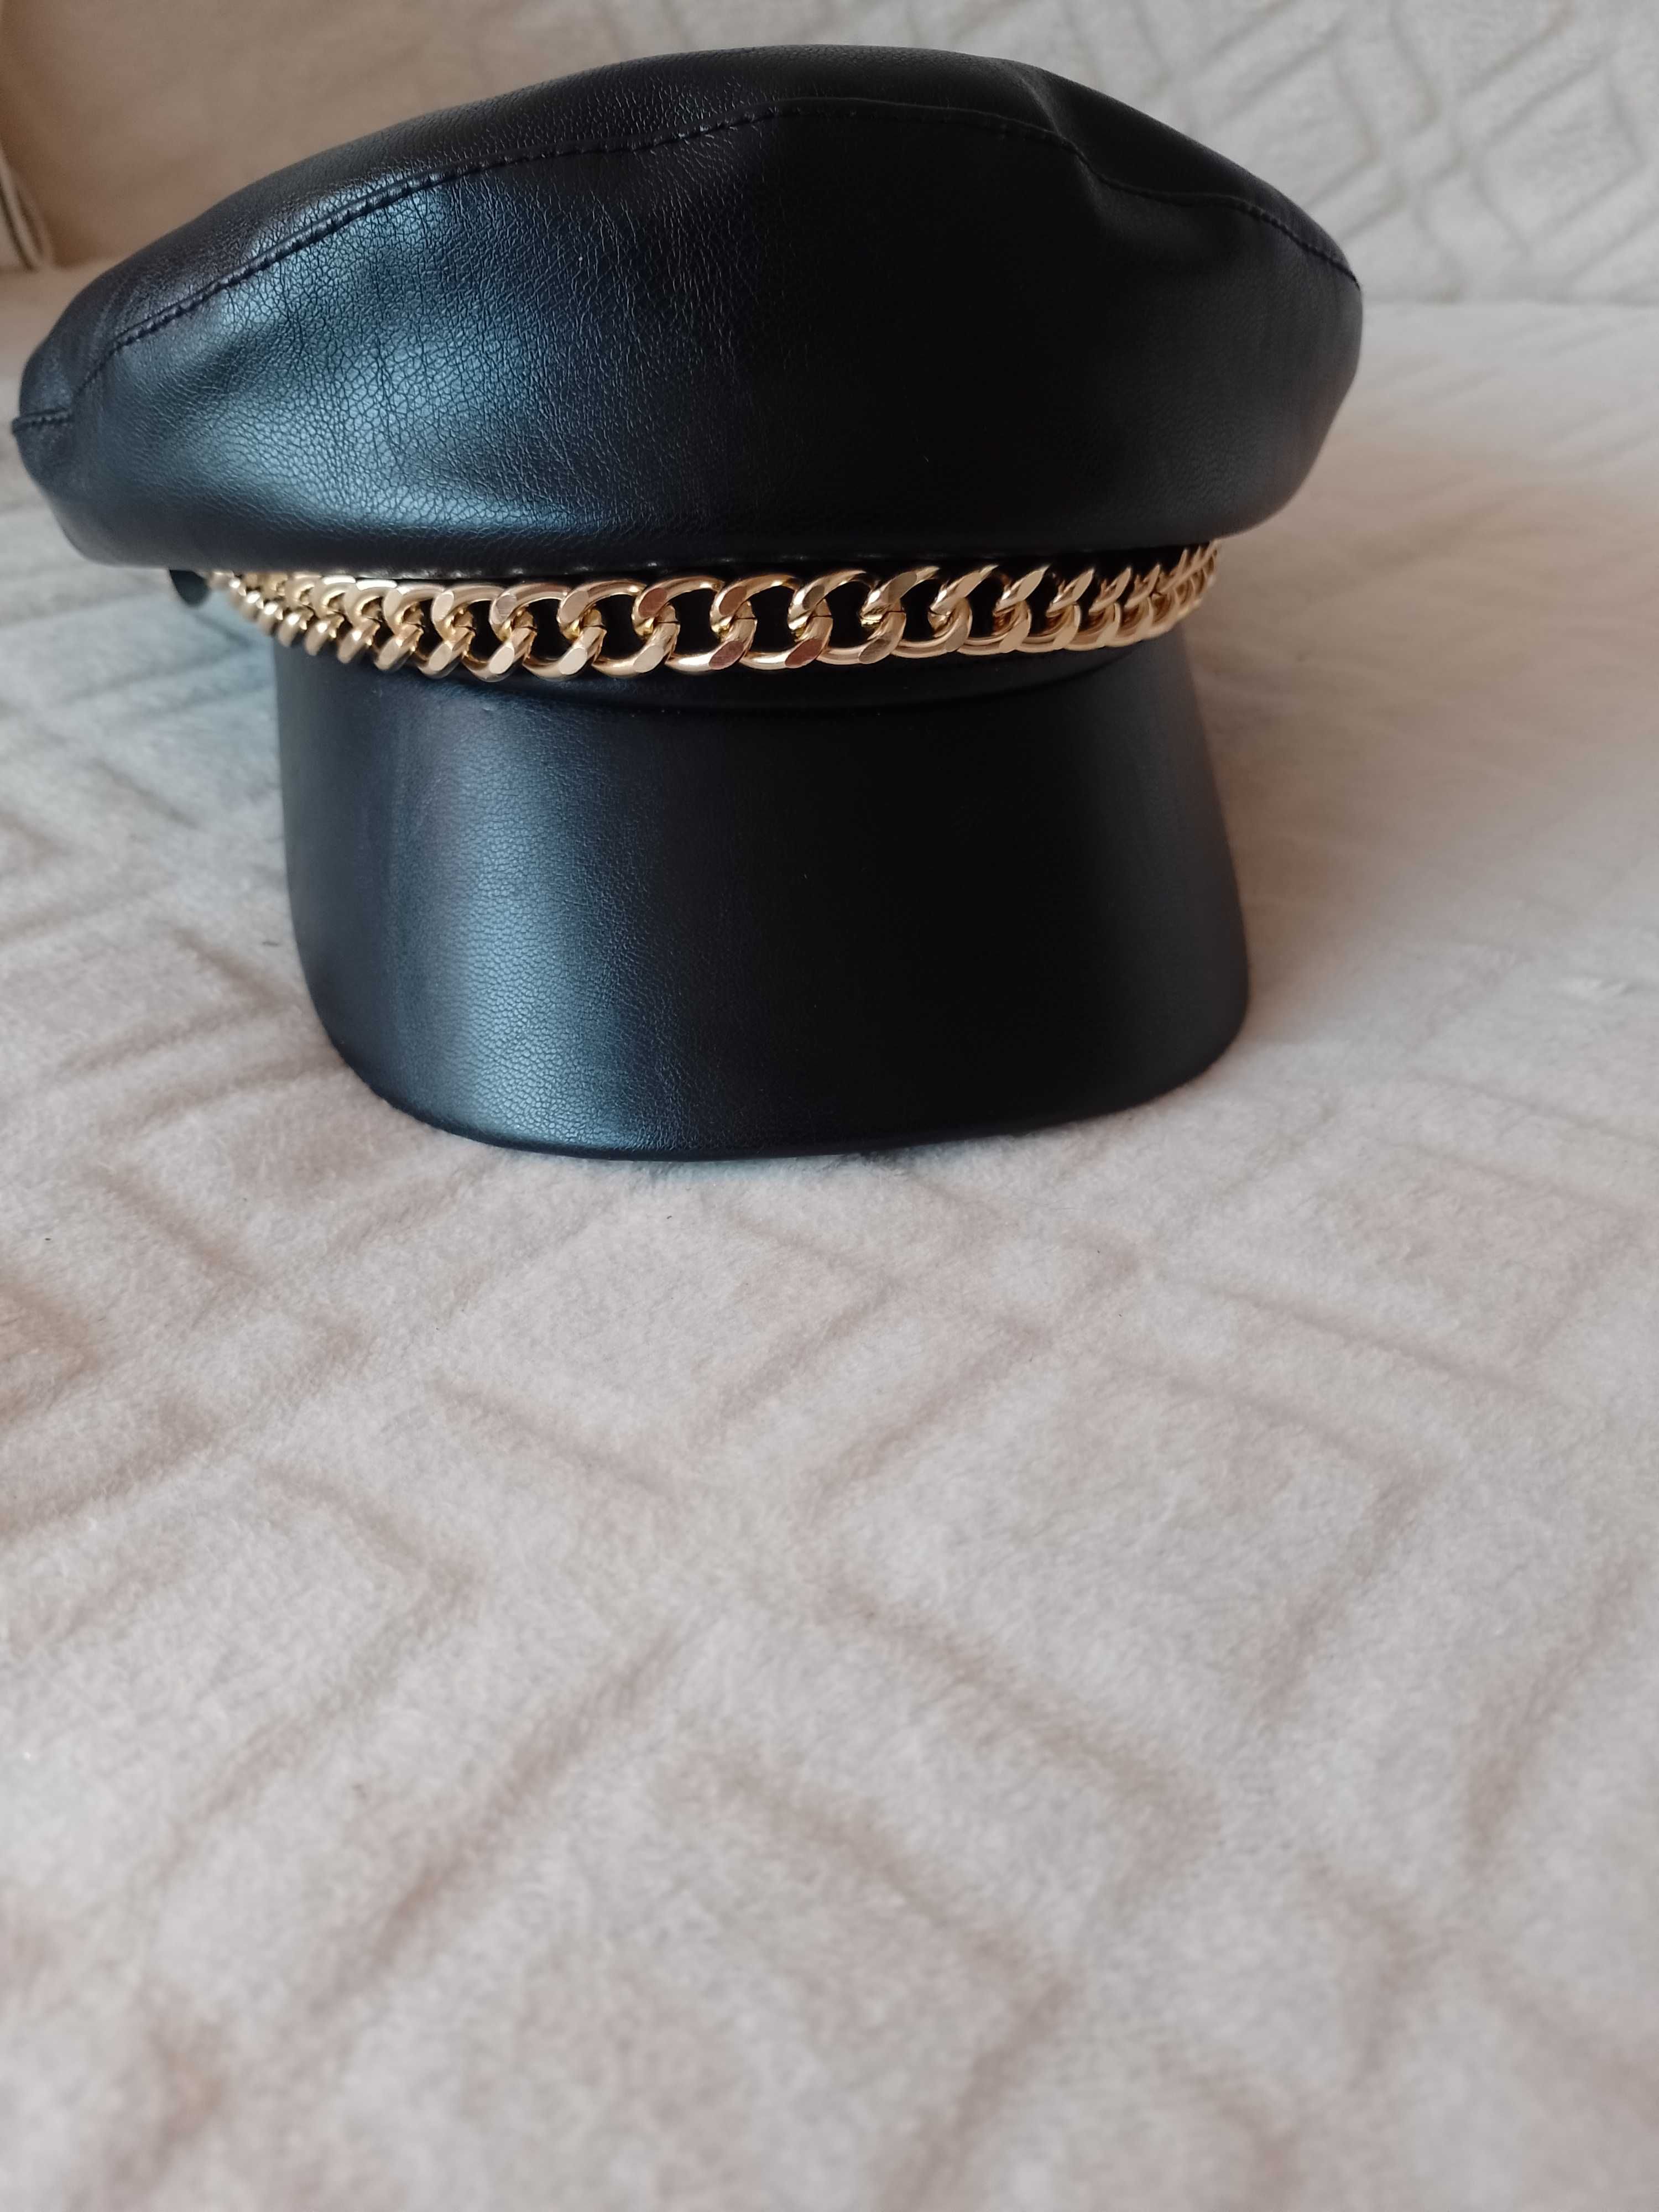 Bogato zdobiona skórzana czapka, beret kaszkiet z Londynu